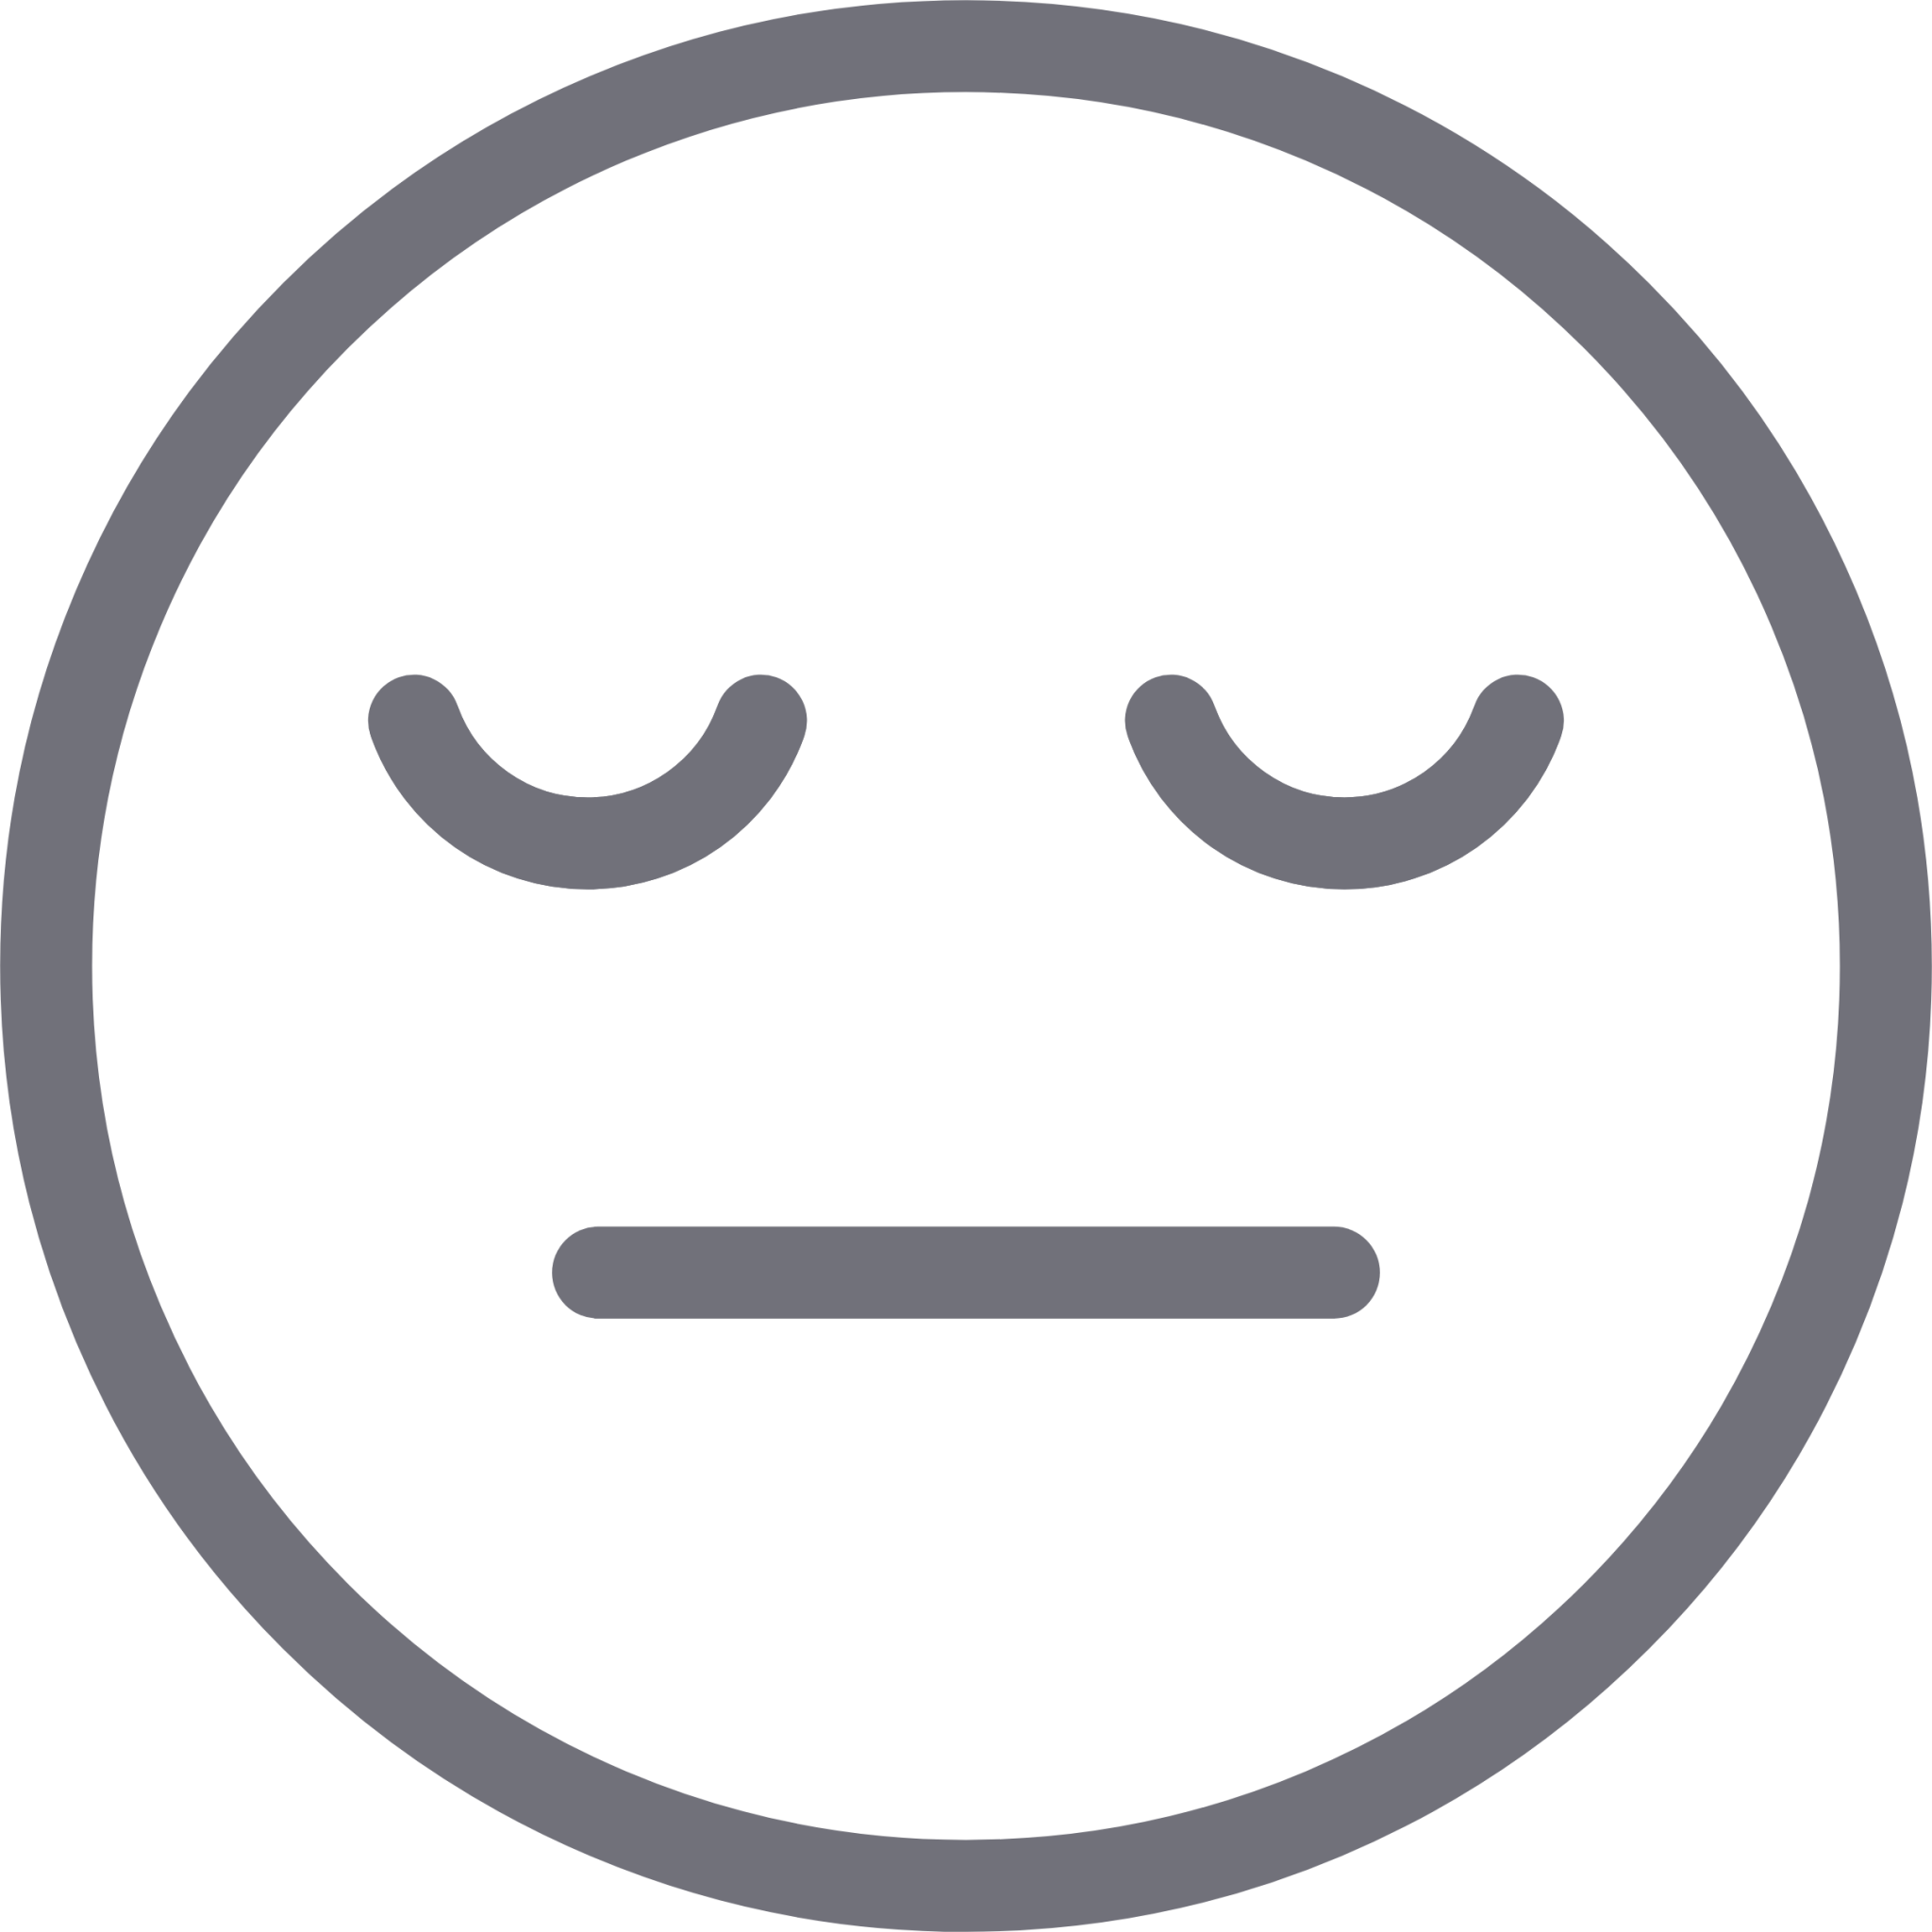 smiley neutral icon